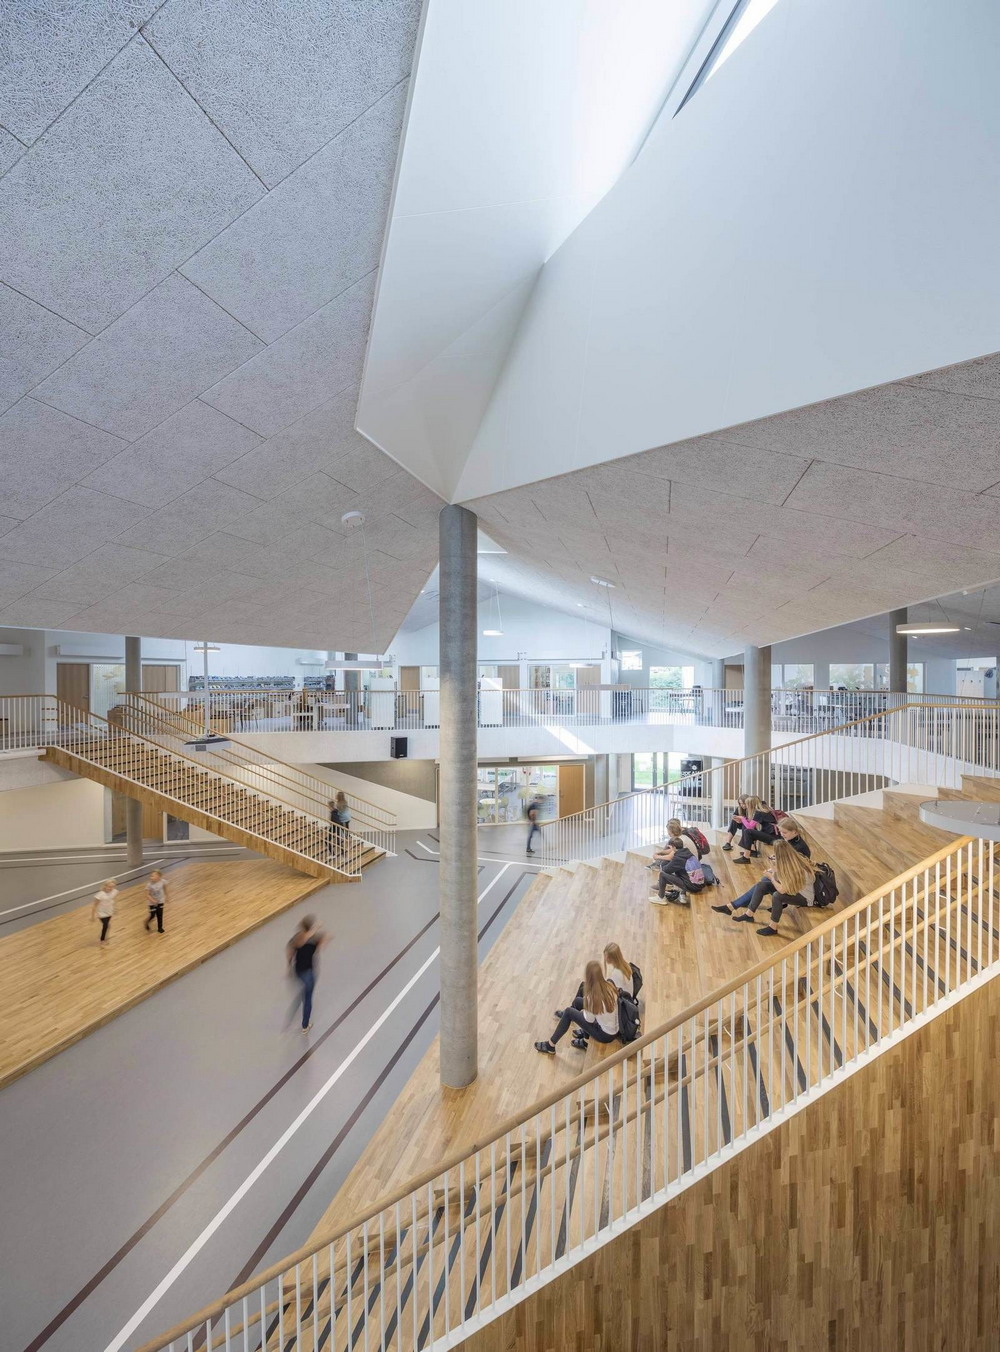 Новая начальная школа в Дании школы, деревьев, Школа, использовать, среде, Студия, внешней, особый, делает, деятельности, видов, разных, возможностей, много, создающему, атриуму, открытому, физические, центральному, ориентированные